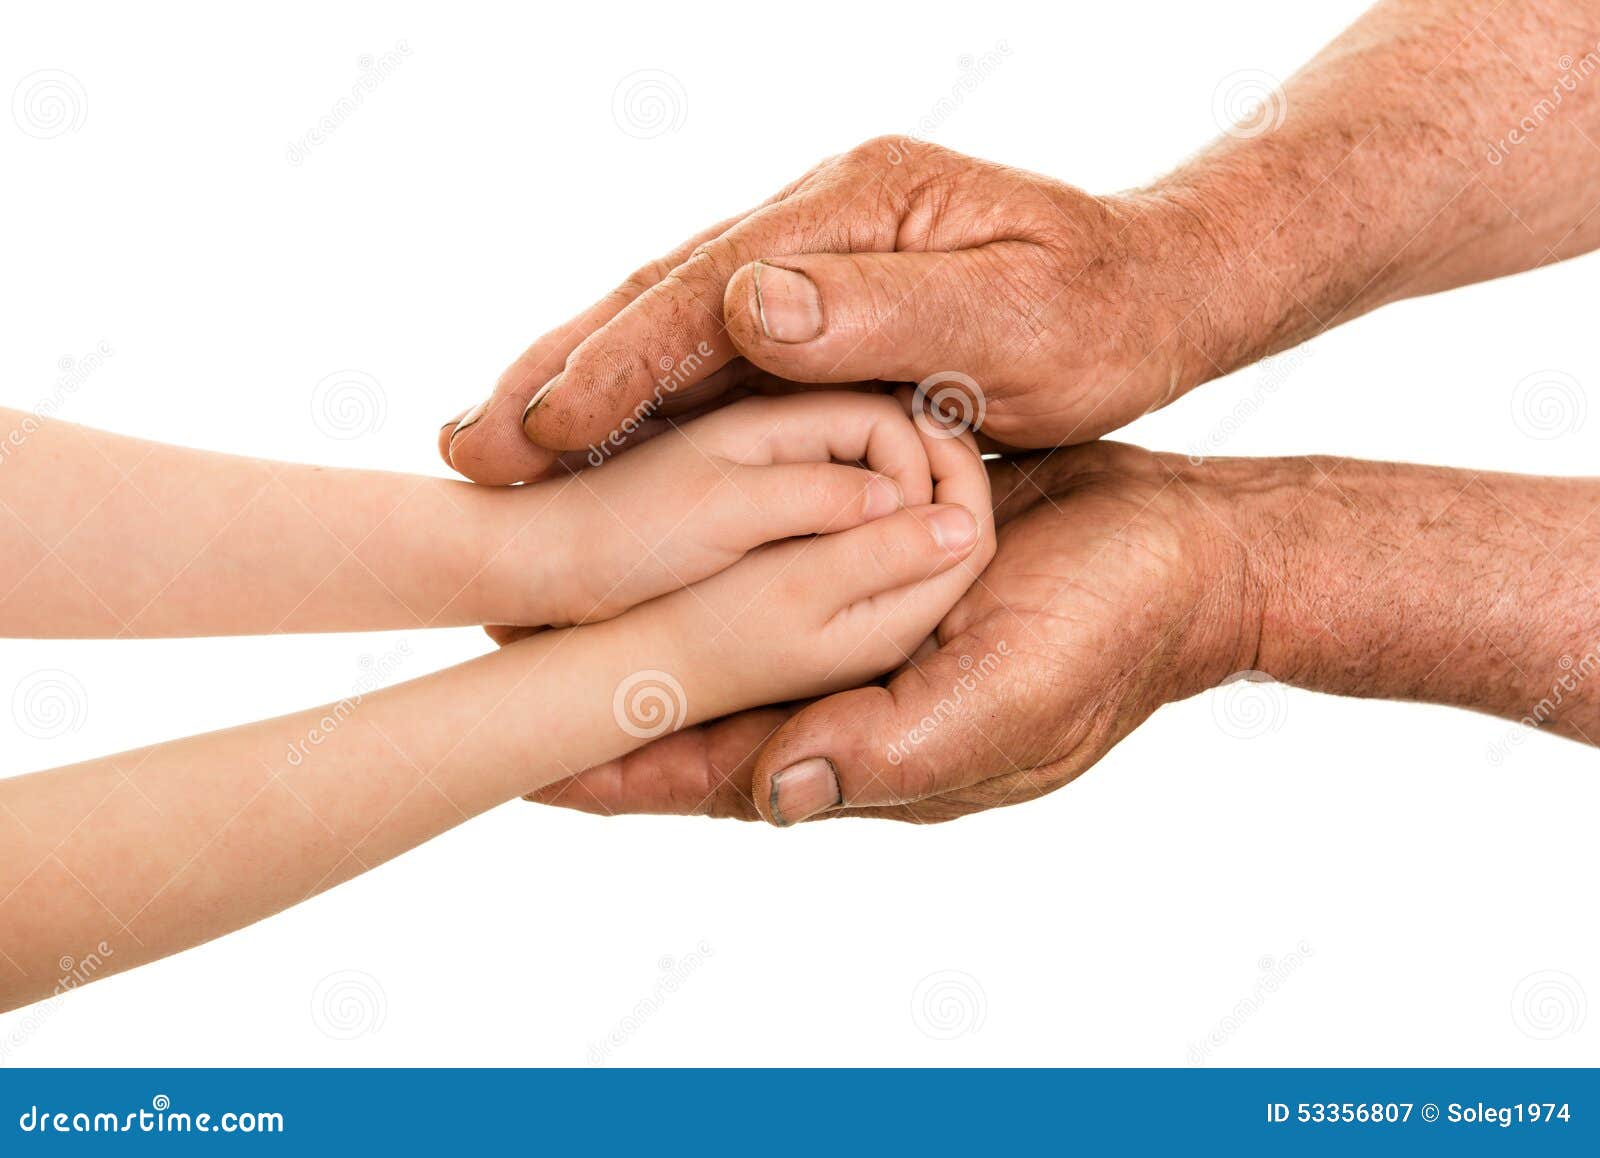 Finger feeling. Рука пожилого и ребенка. Рука старика и рука ребенка. Руки пожилого человека и ребенка.